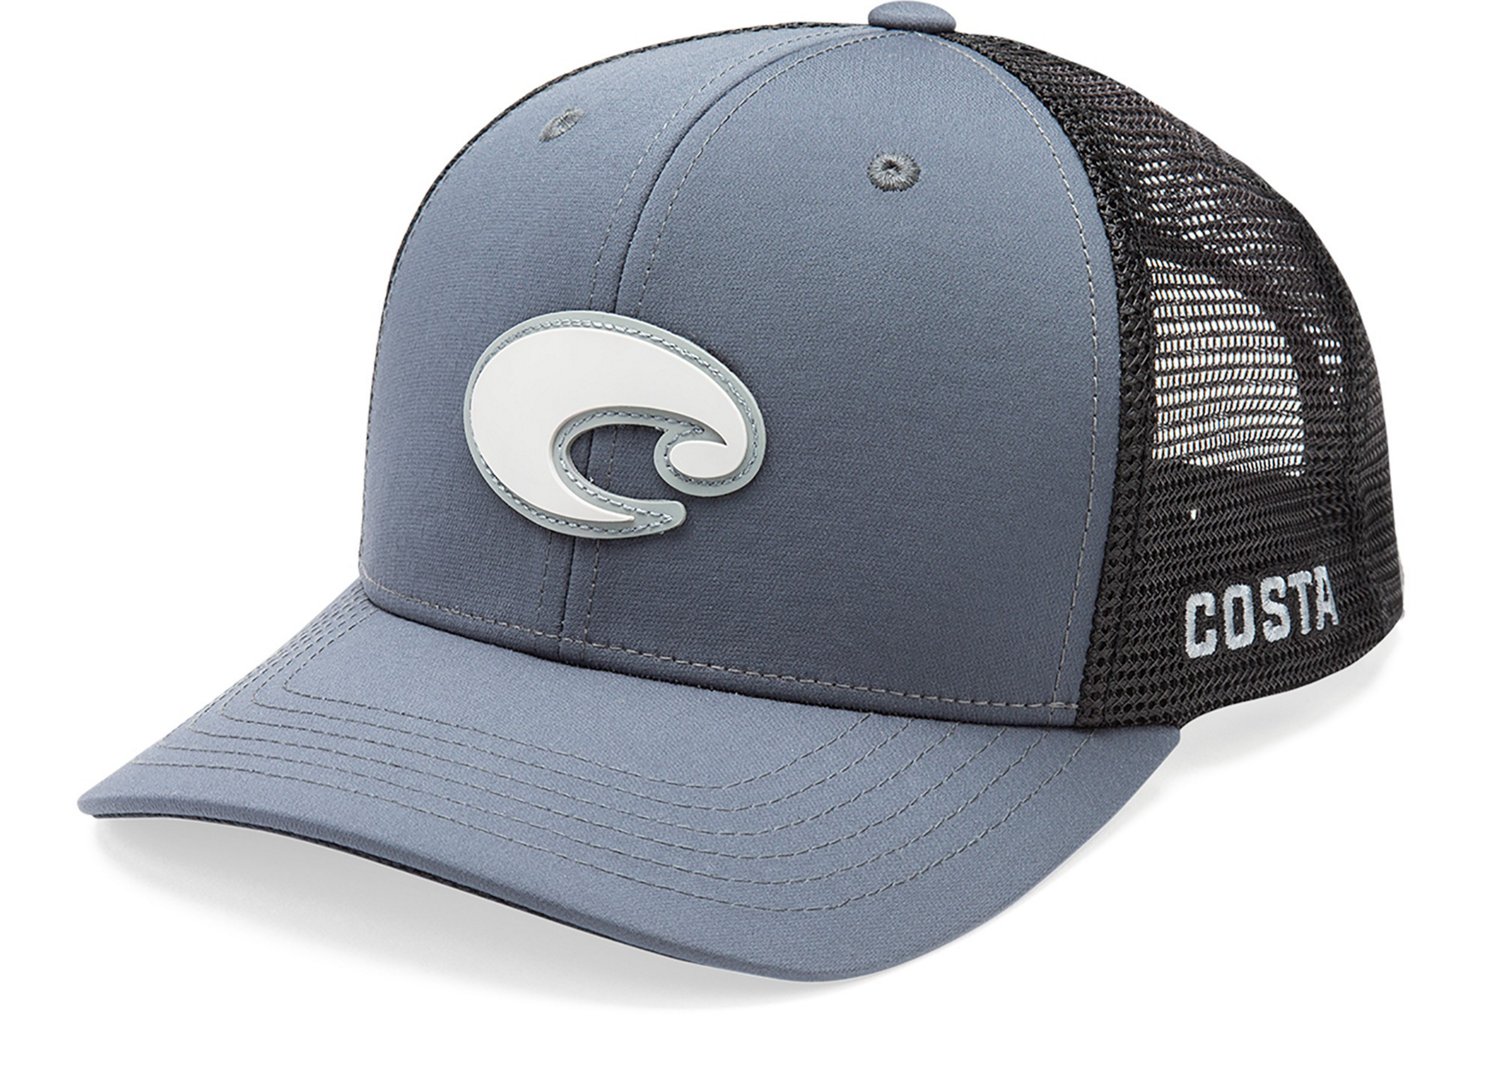 Costa Men's Core Performance Trucker Cap